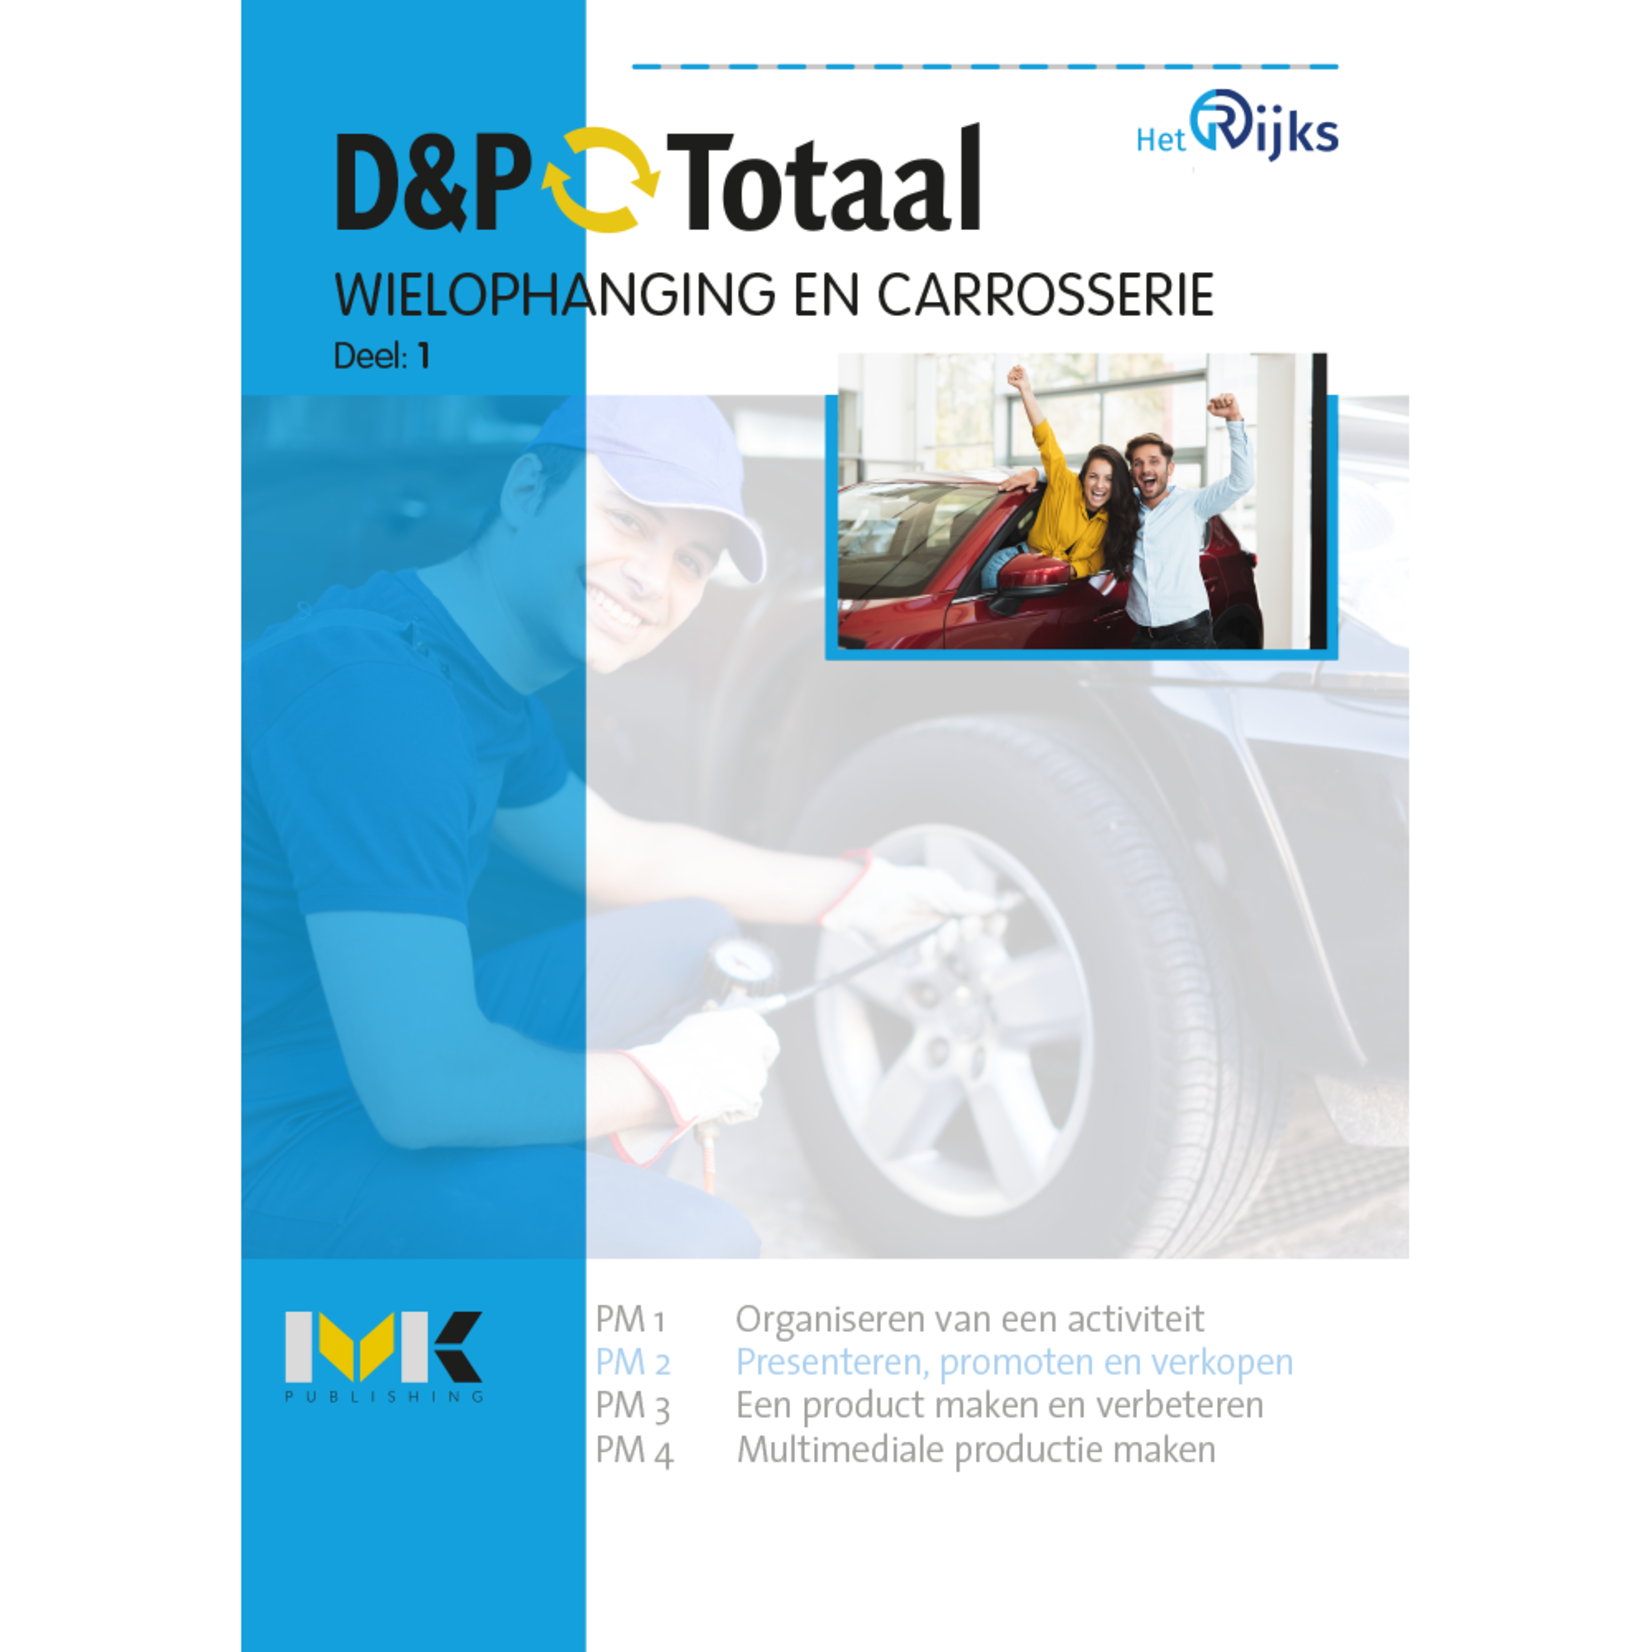 D&P-Totaal - M&T Wielophanging en carrosserie (PM2)